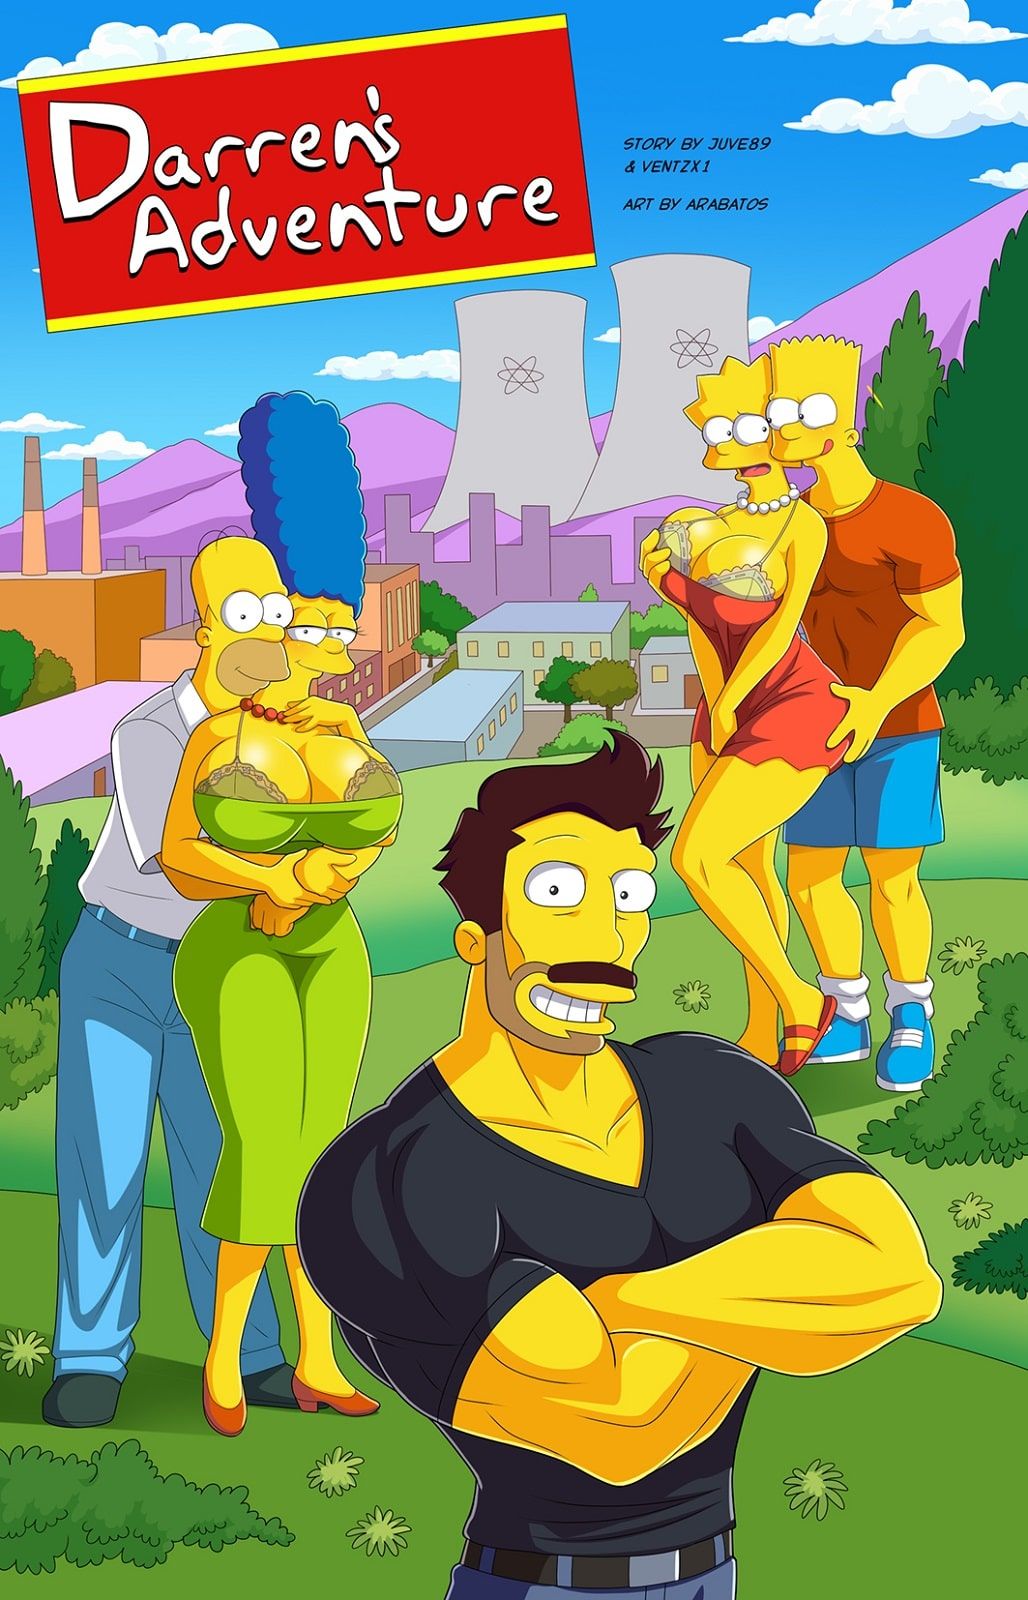 Simpsons - Darren's Adventure by Arabatos page 1